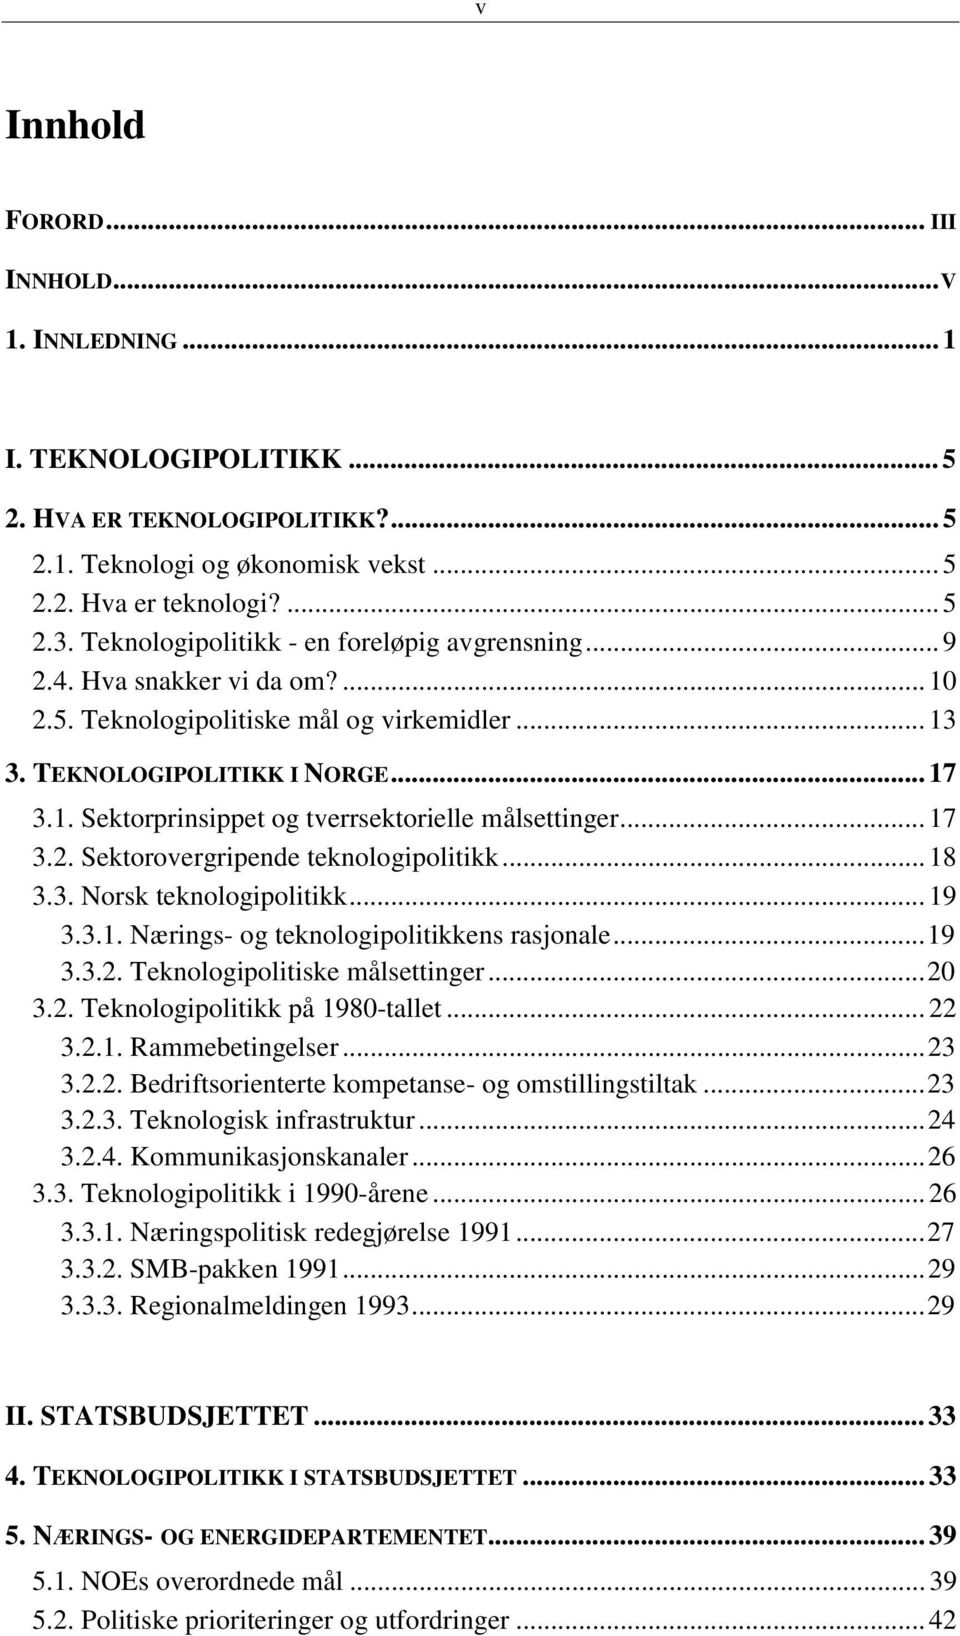 .. 17 3.2. Sektorovergripende teknologipolitikk... 18 3.3. Norsk teknologipolitikk... 19 3.3.1. Nærings- og teknologipolitikkens rasjonale...19 3.3.2. Teknologipolitiske målsettinger...20 3.2. Teknologipolitikk på 1980-tallet.